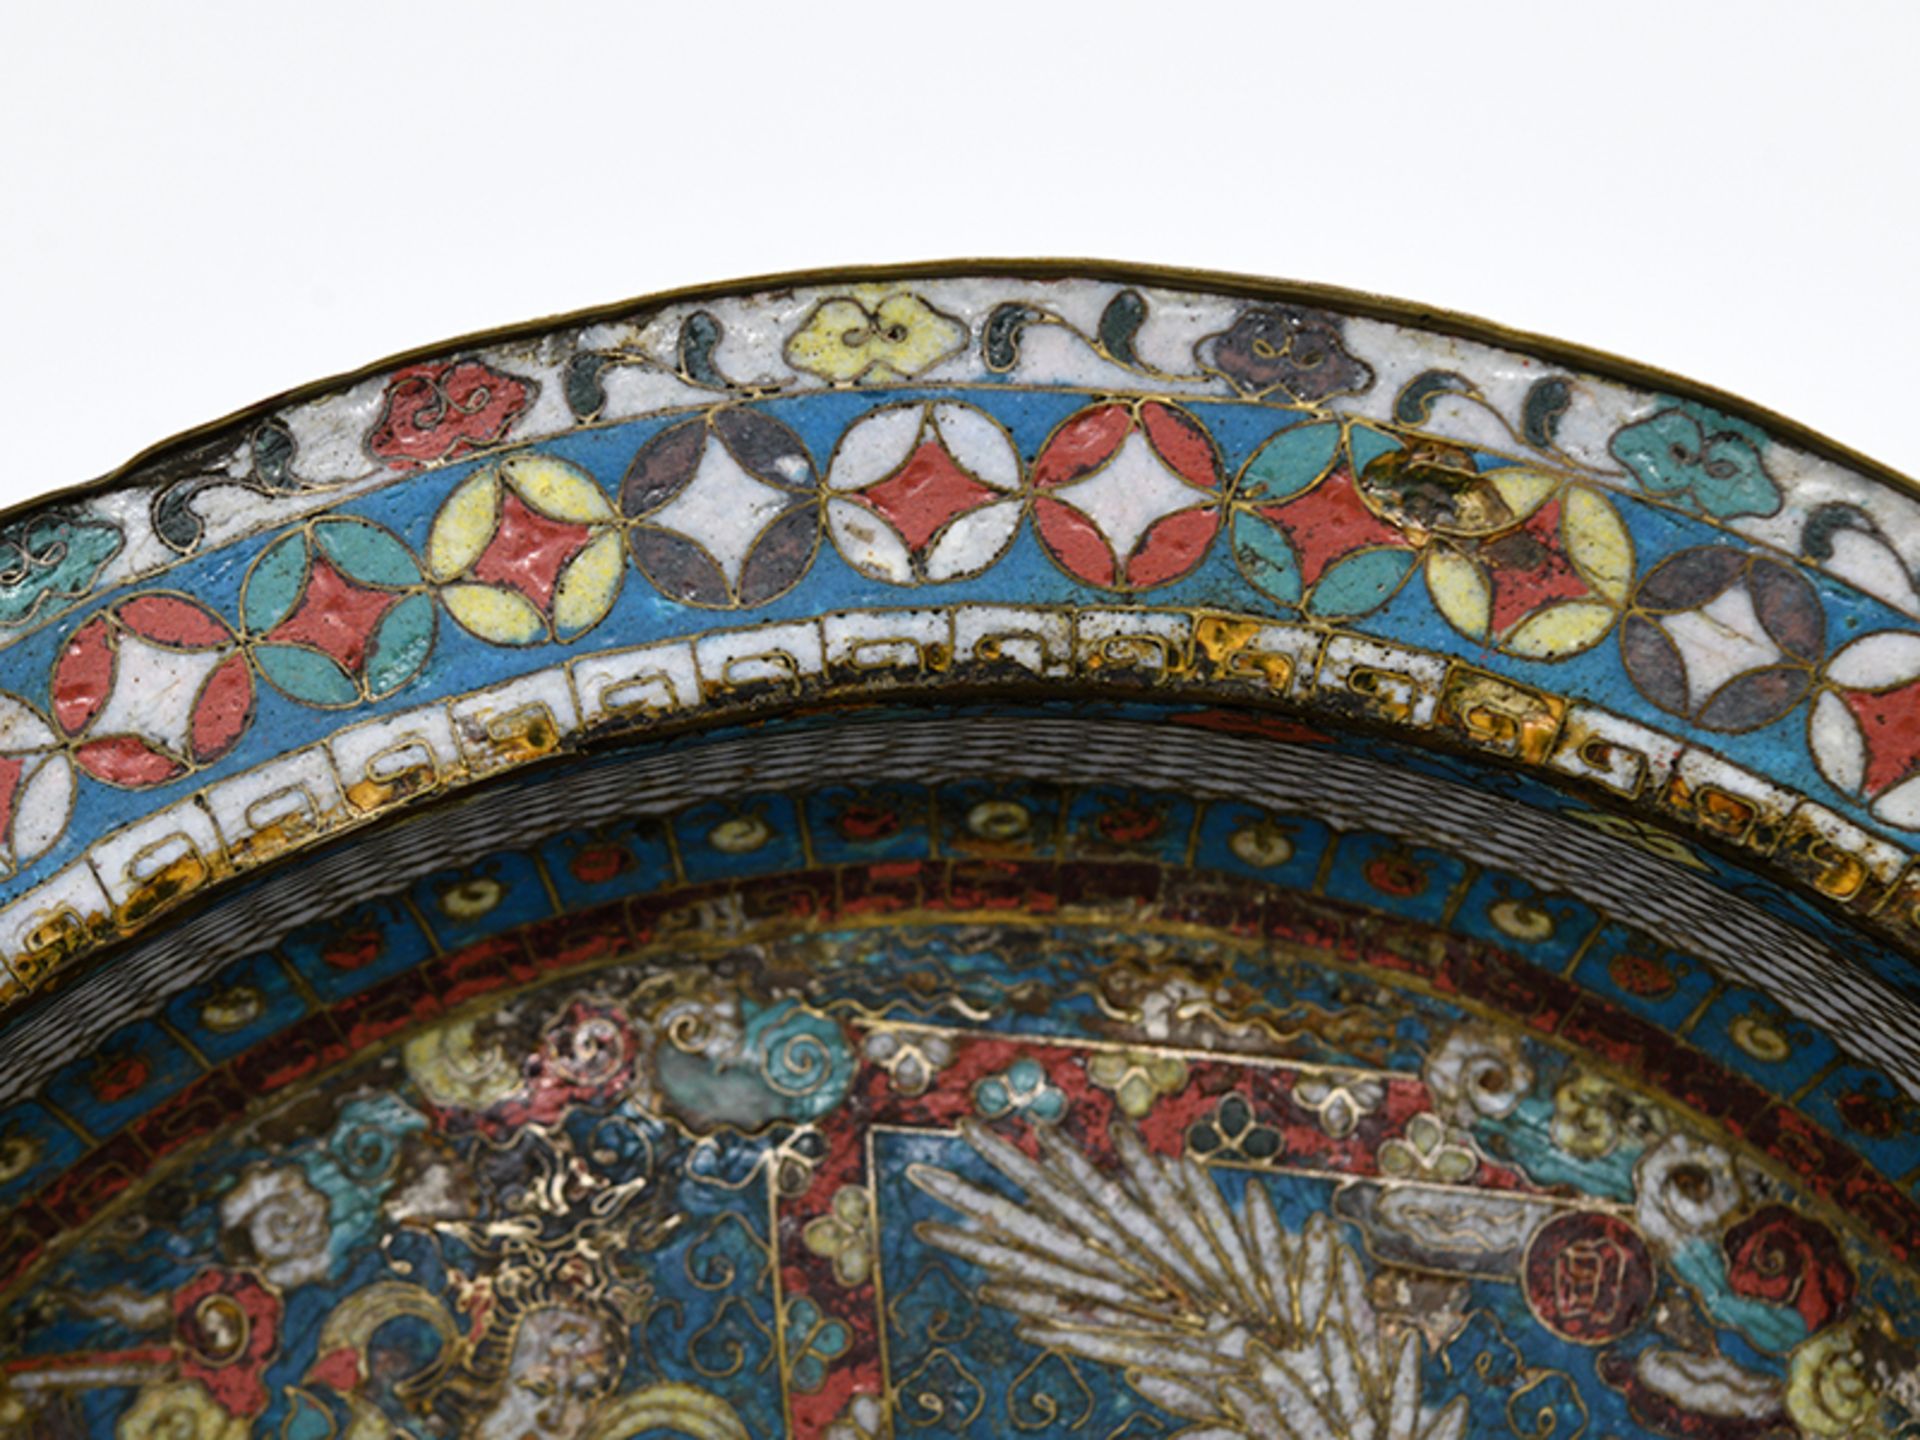 Große Emaille-Cloisonné-Beckenschale; China; frühes 17. Jh.Messing; innen und auf der Fahne farbiger - Image 3 of 11